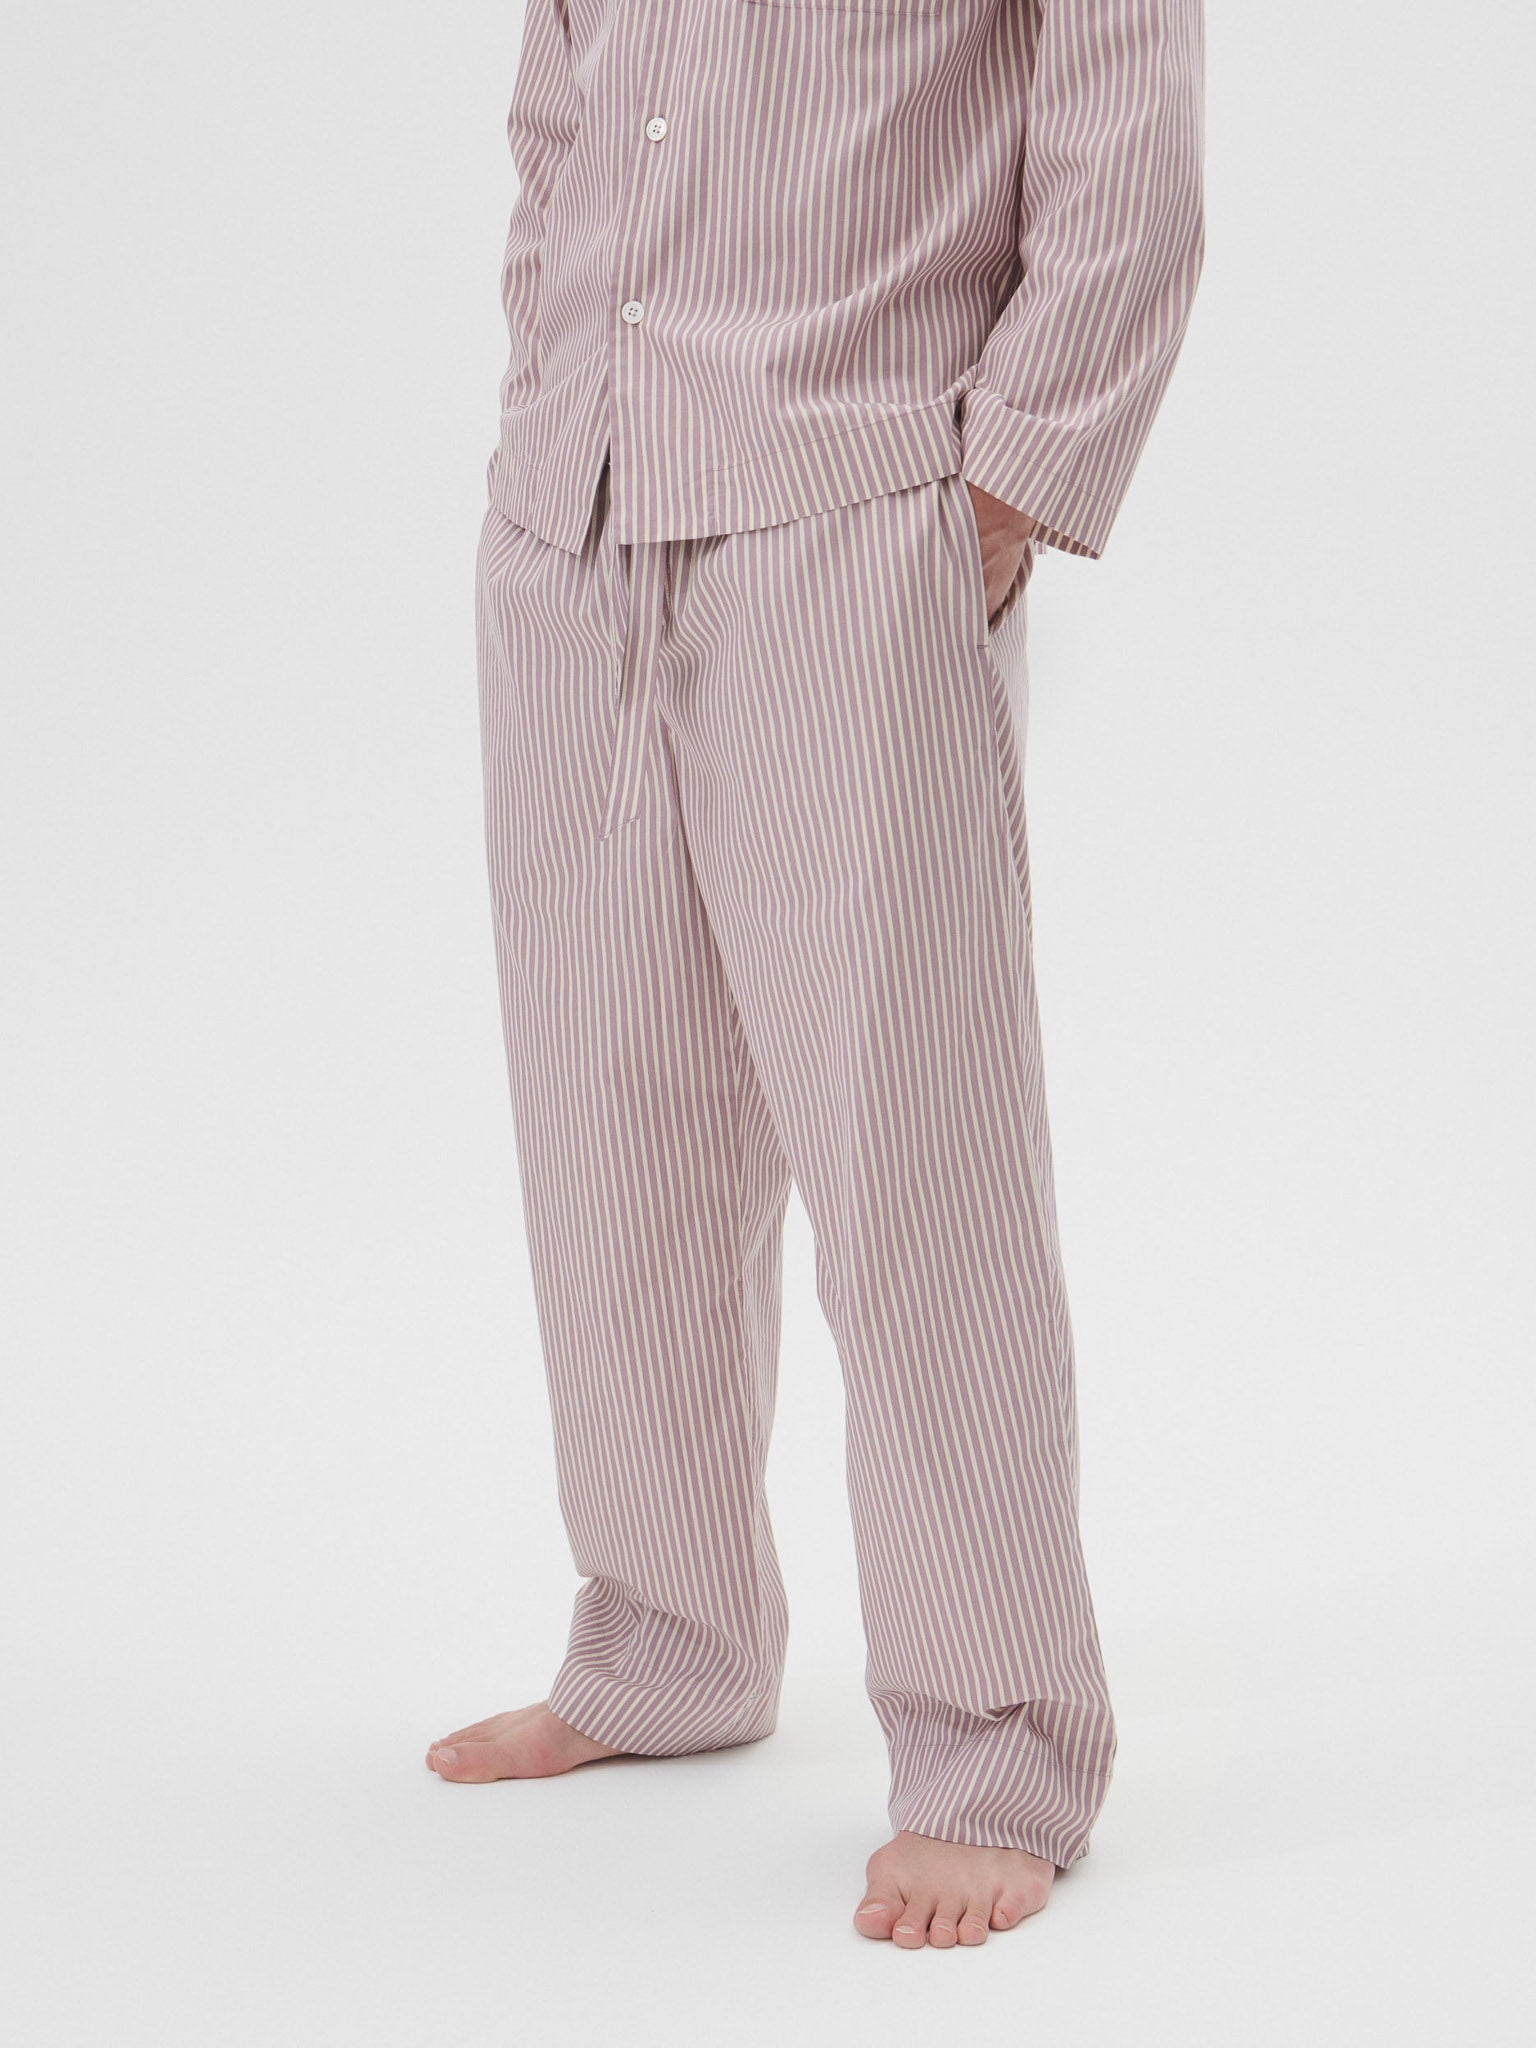 Poplin Pyjamas Pants in Skipper Stripes